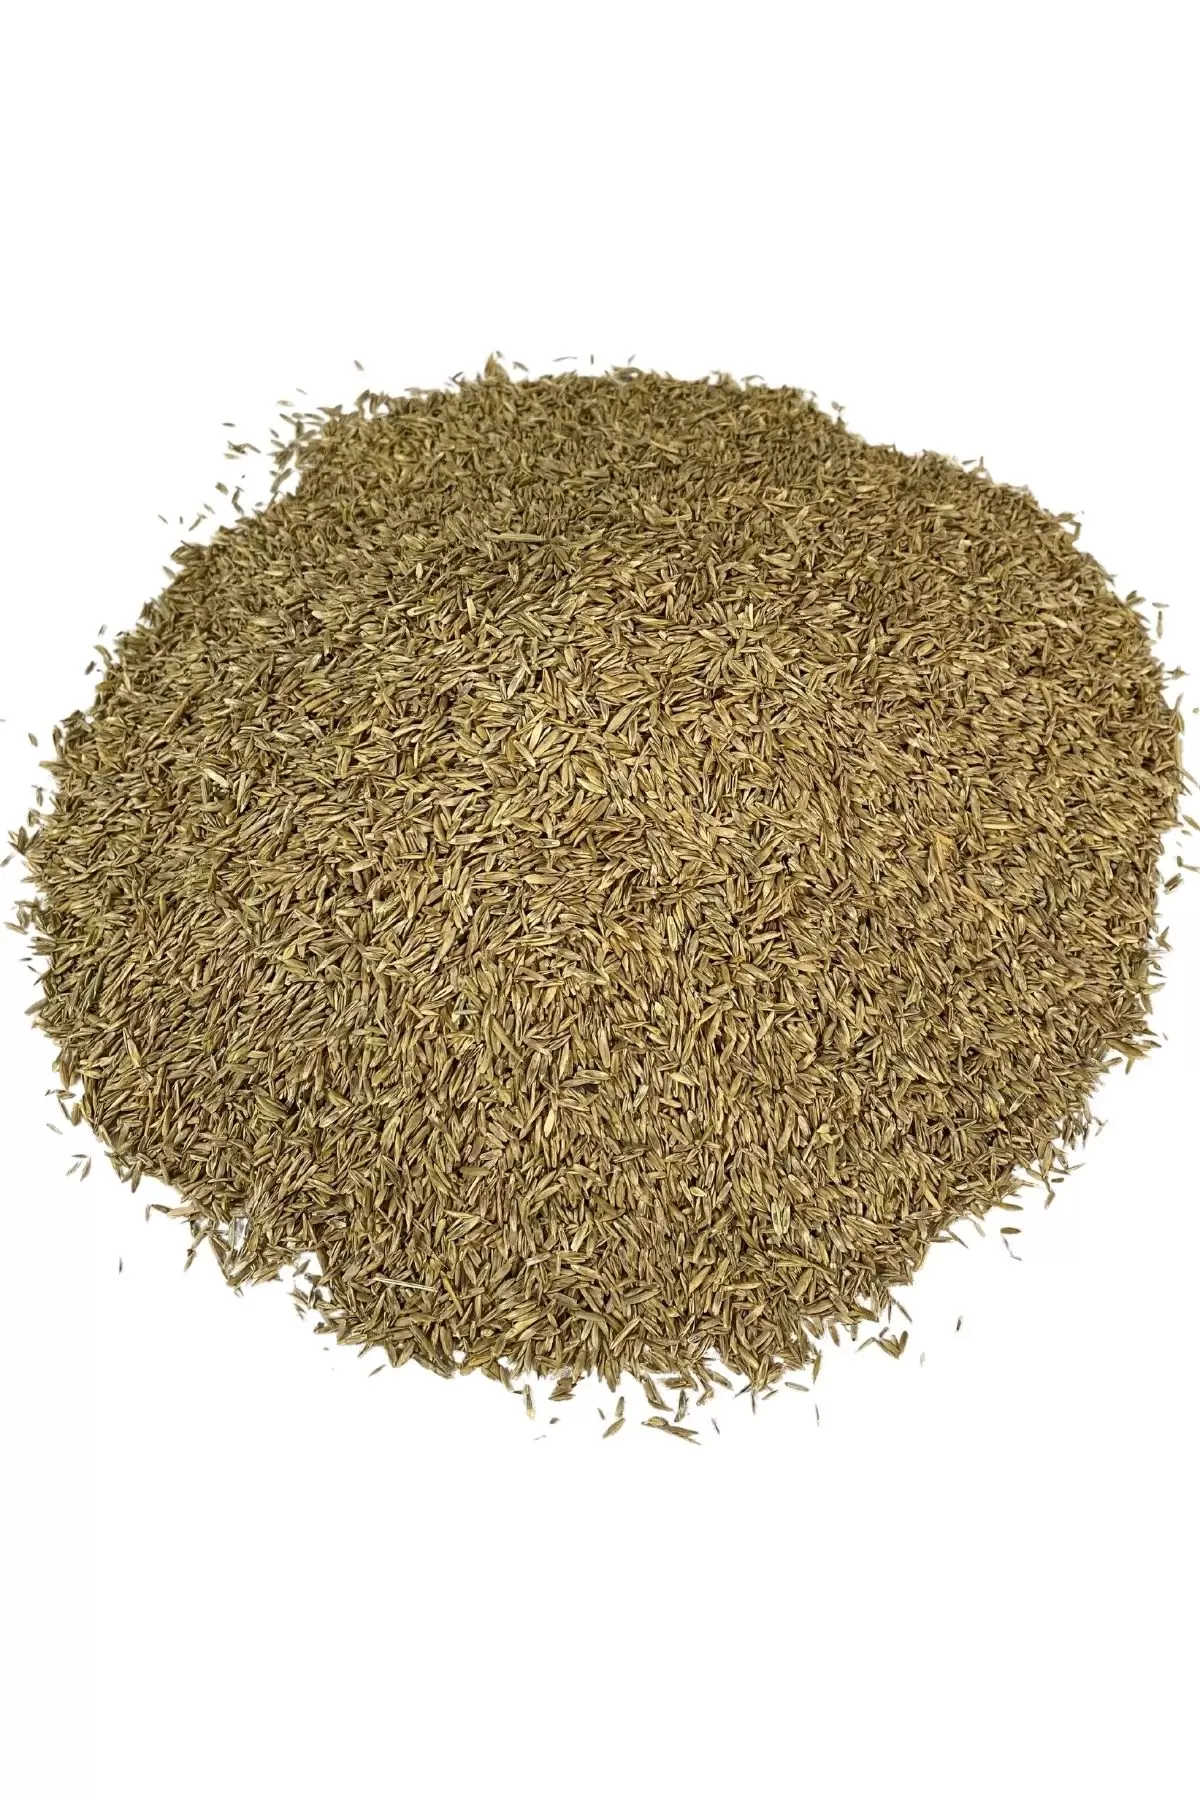 Grass Mixture 6 Karışımlı Çim Tohumu 5 Kg